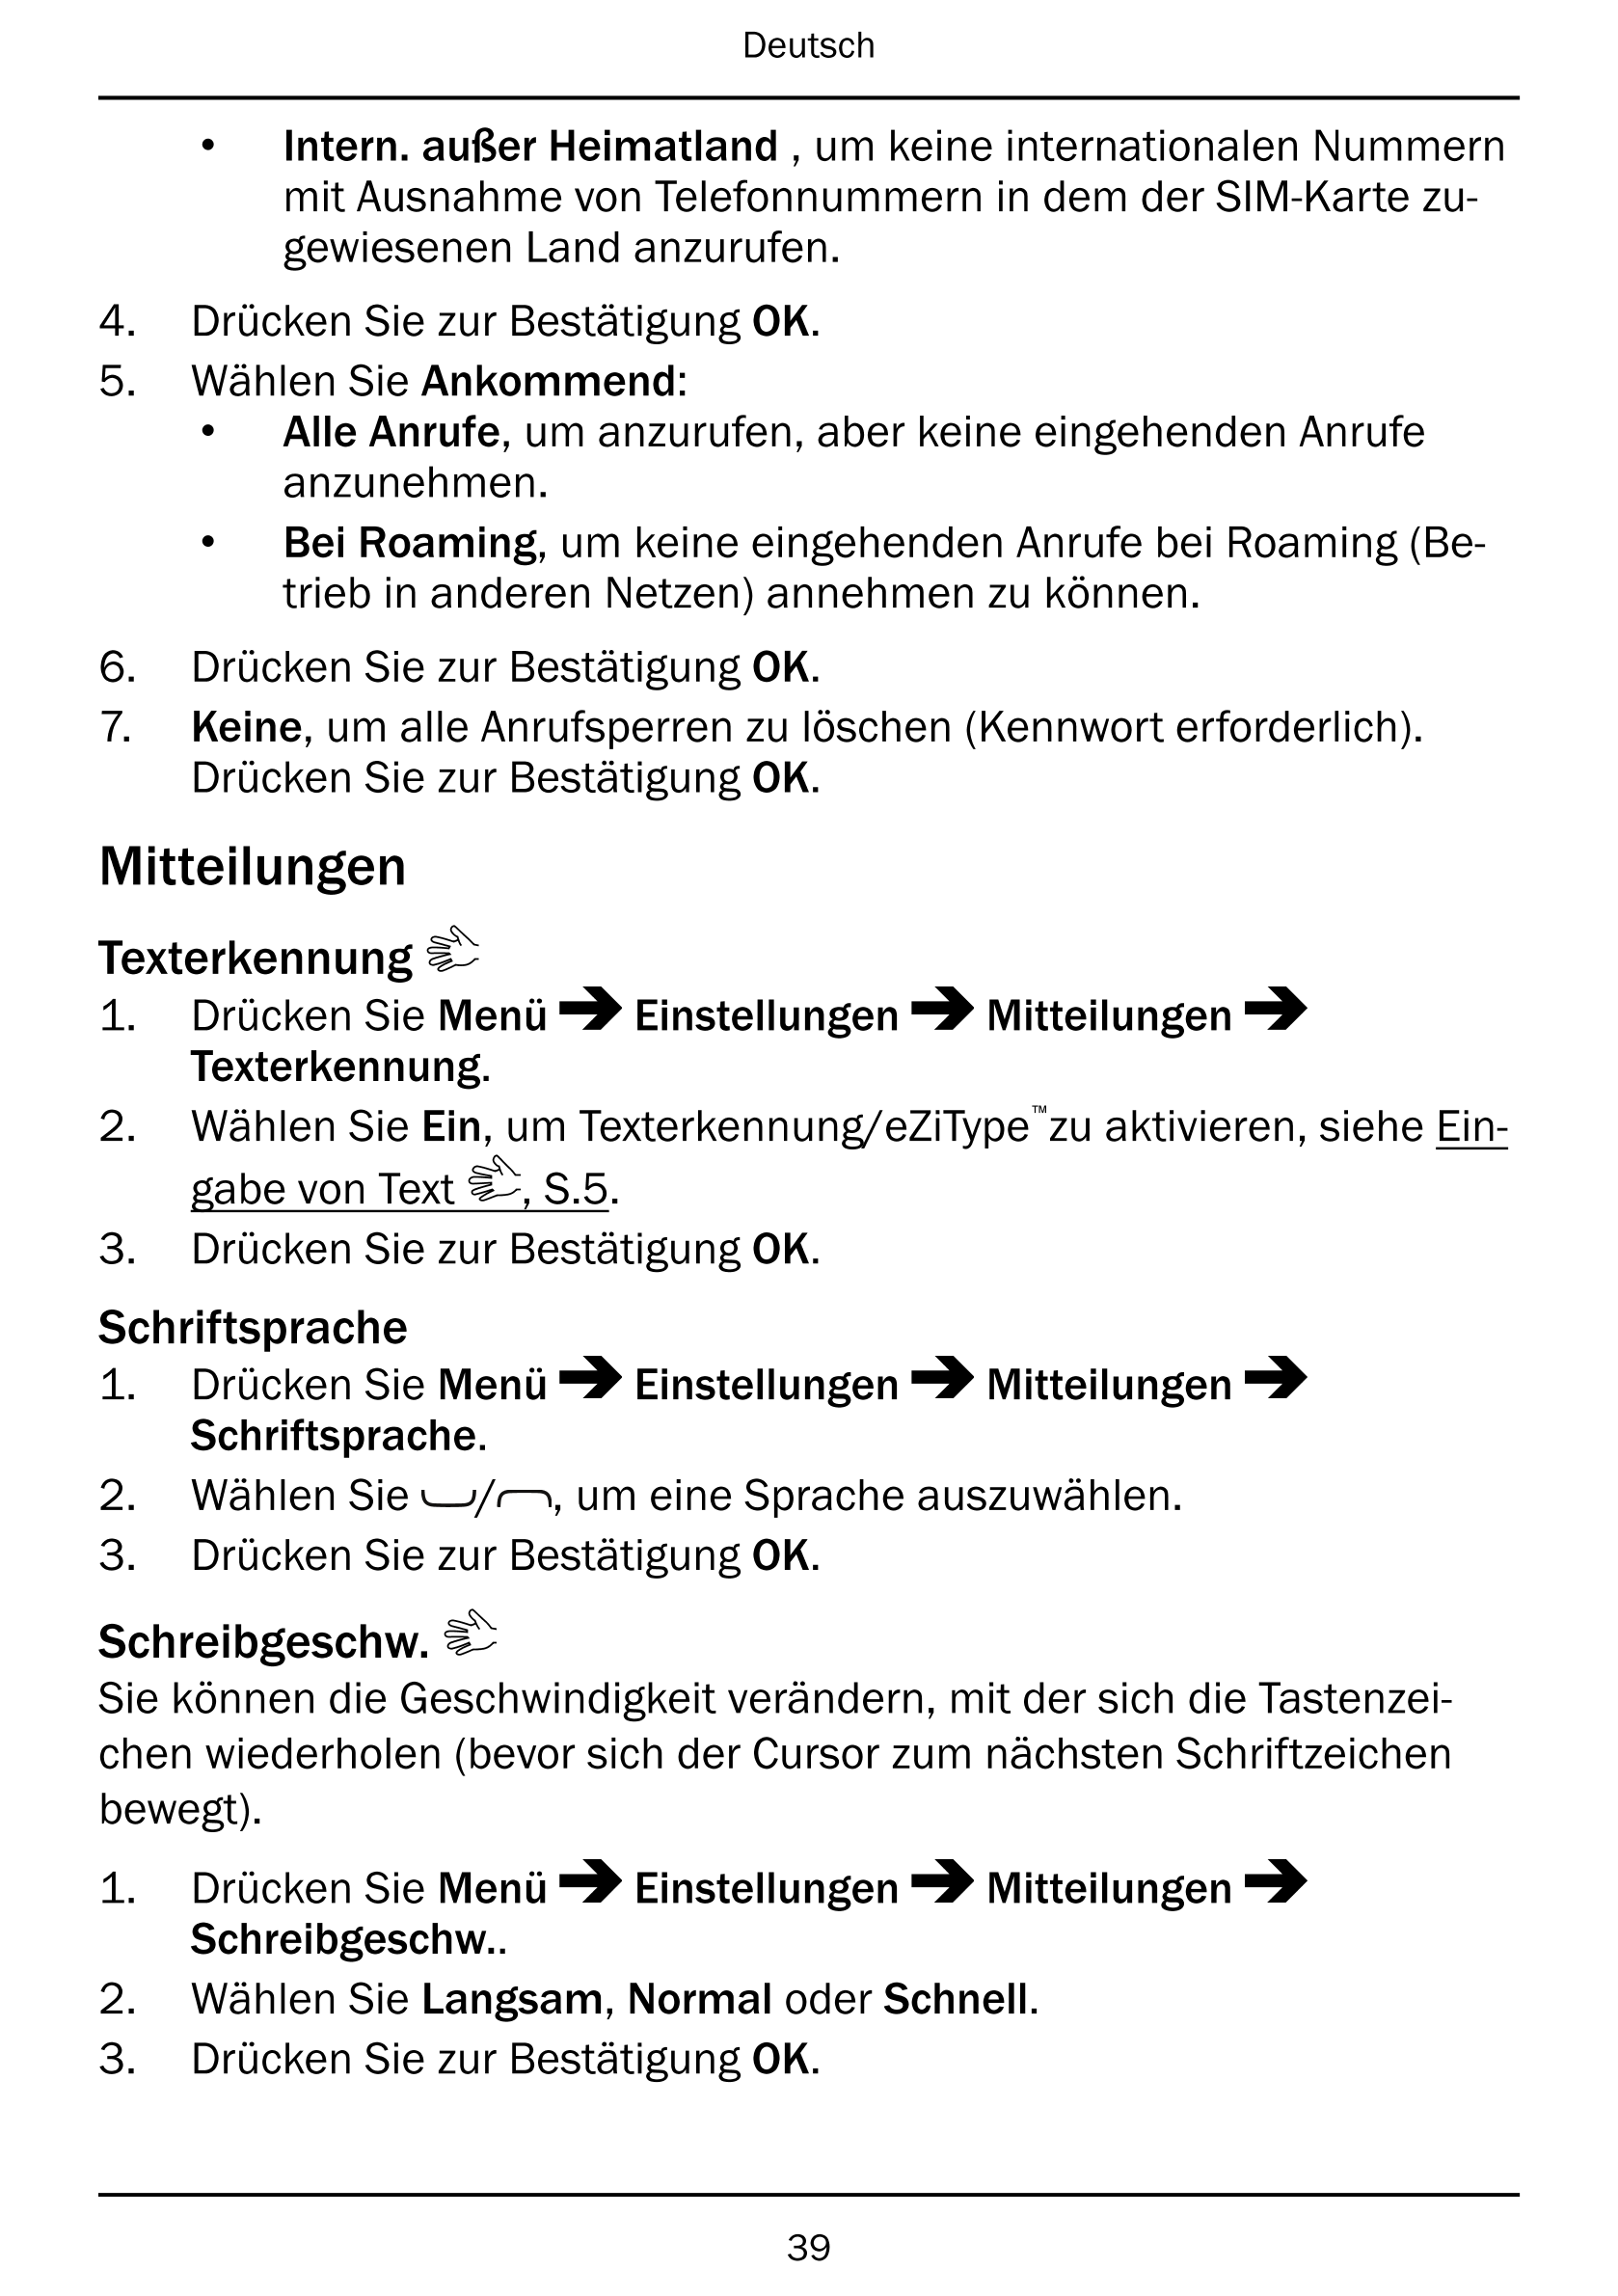 Deutsch
• Intern. außer Heimatland , um keine internationalen Nummern
mit Ausnahme von Telefonnummern in dem der SIM-Karte zu-
g